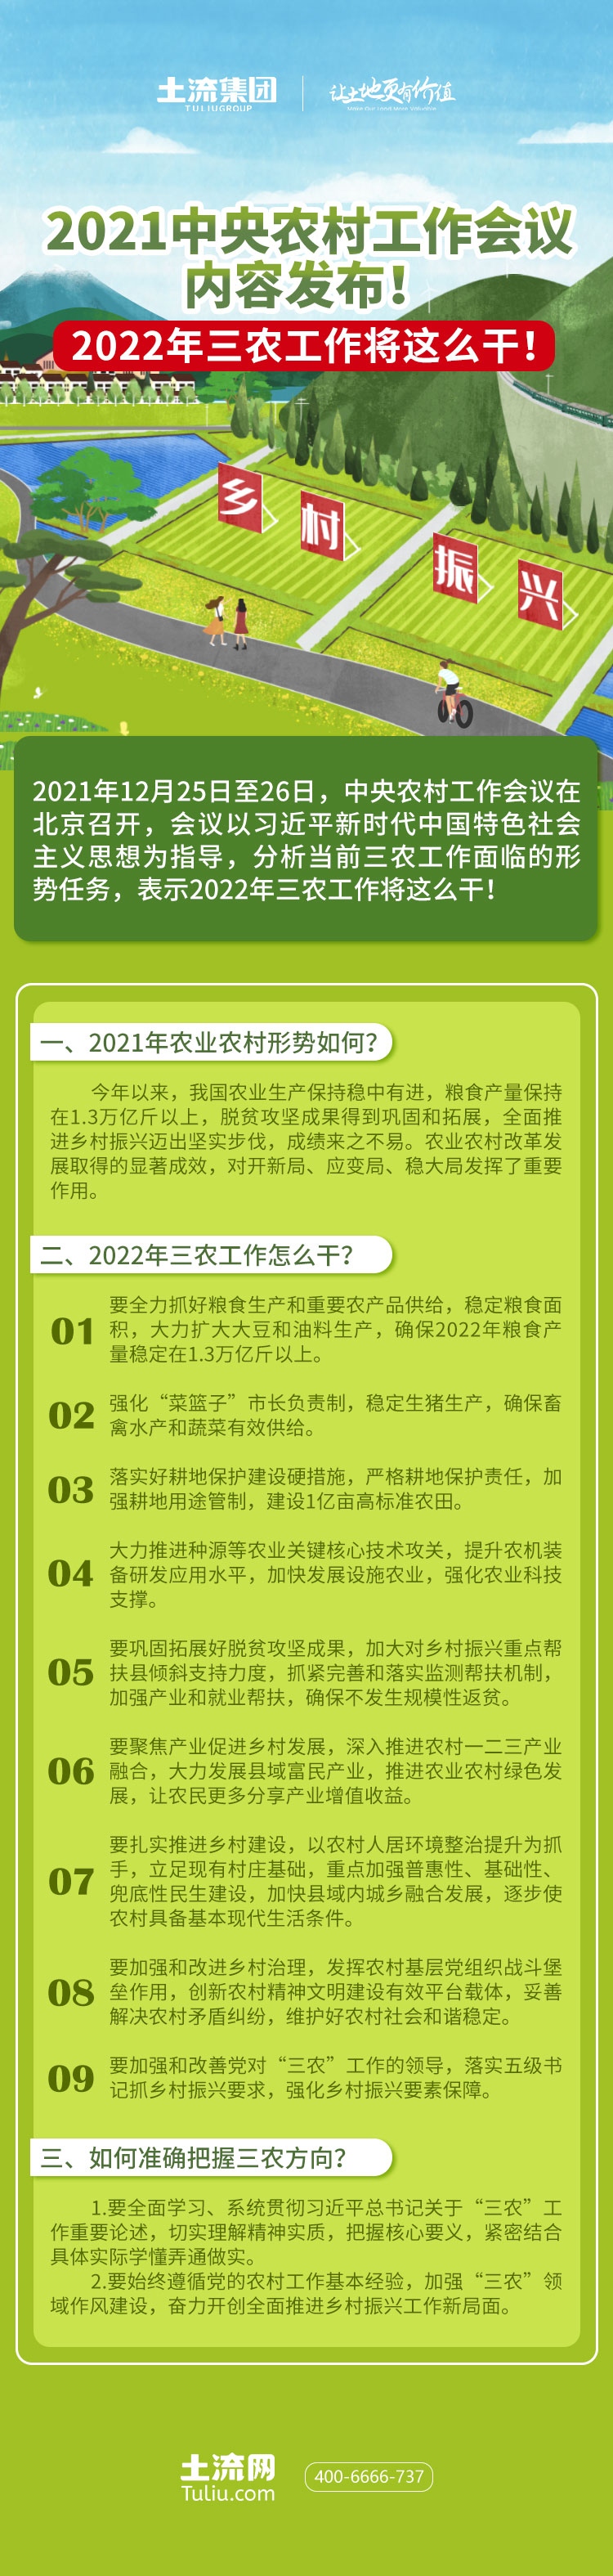 2021中央农村工作会议图解-自制图